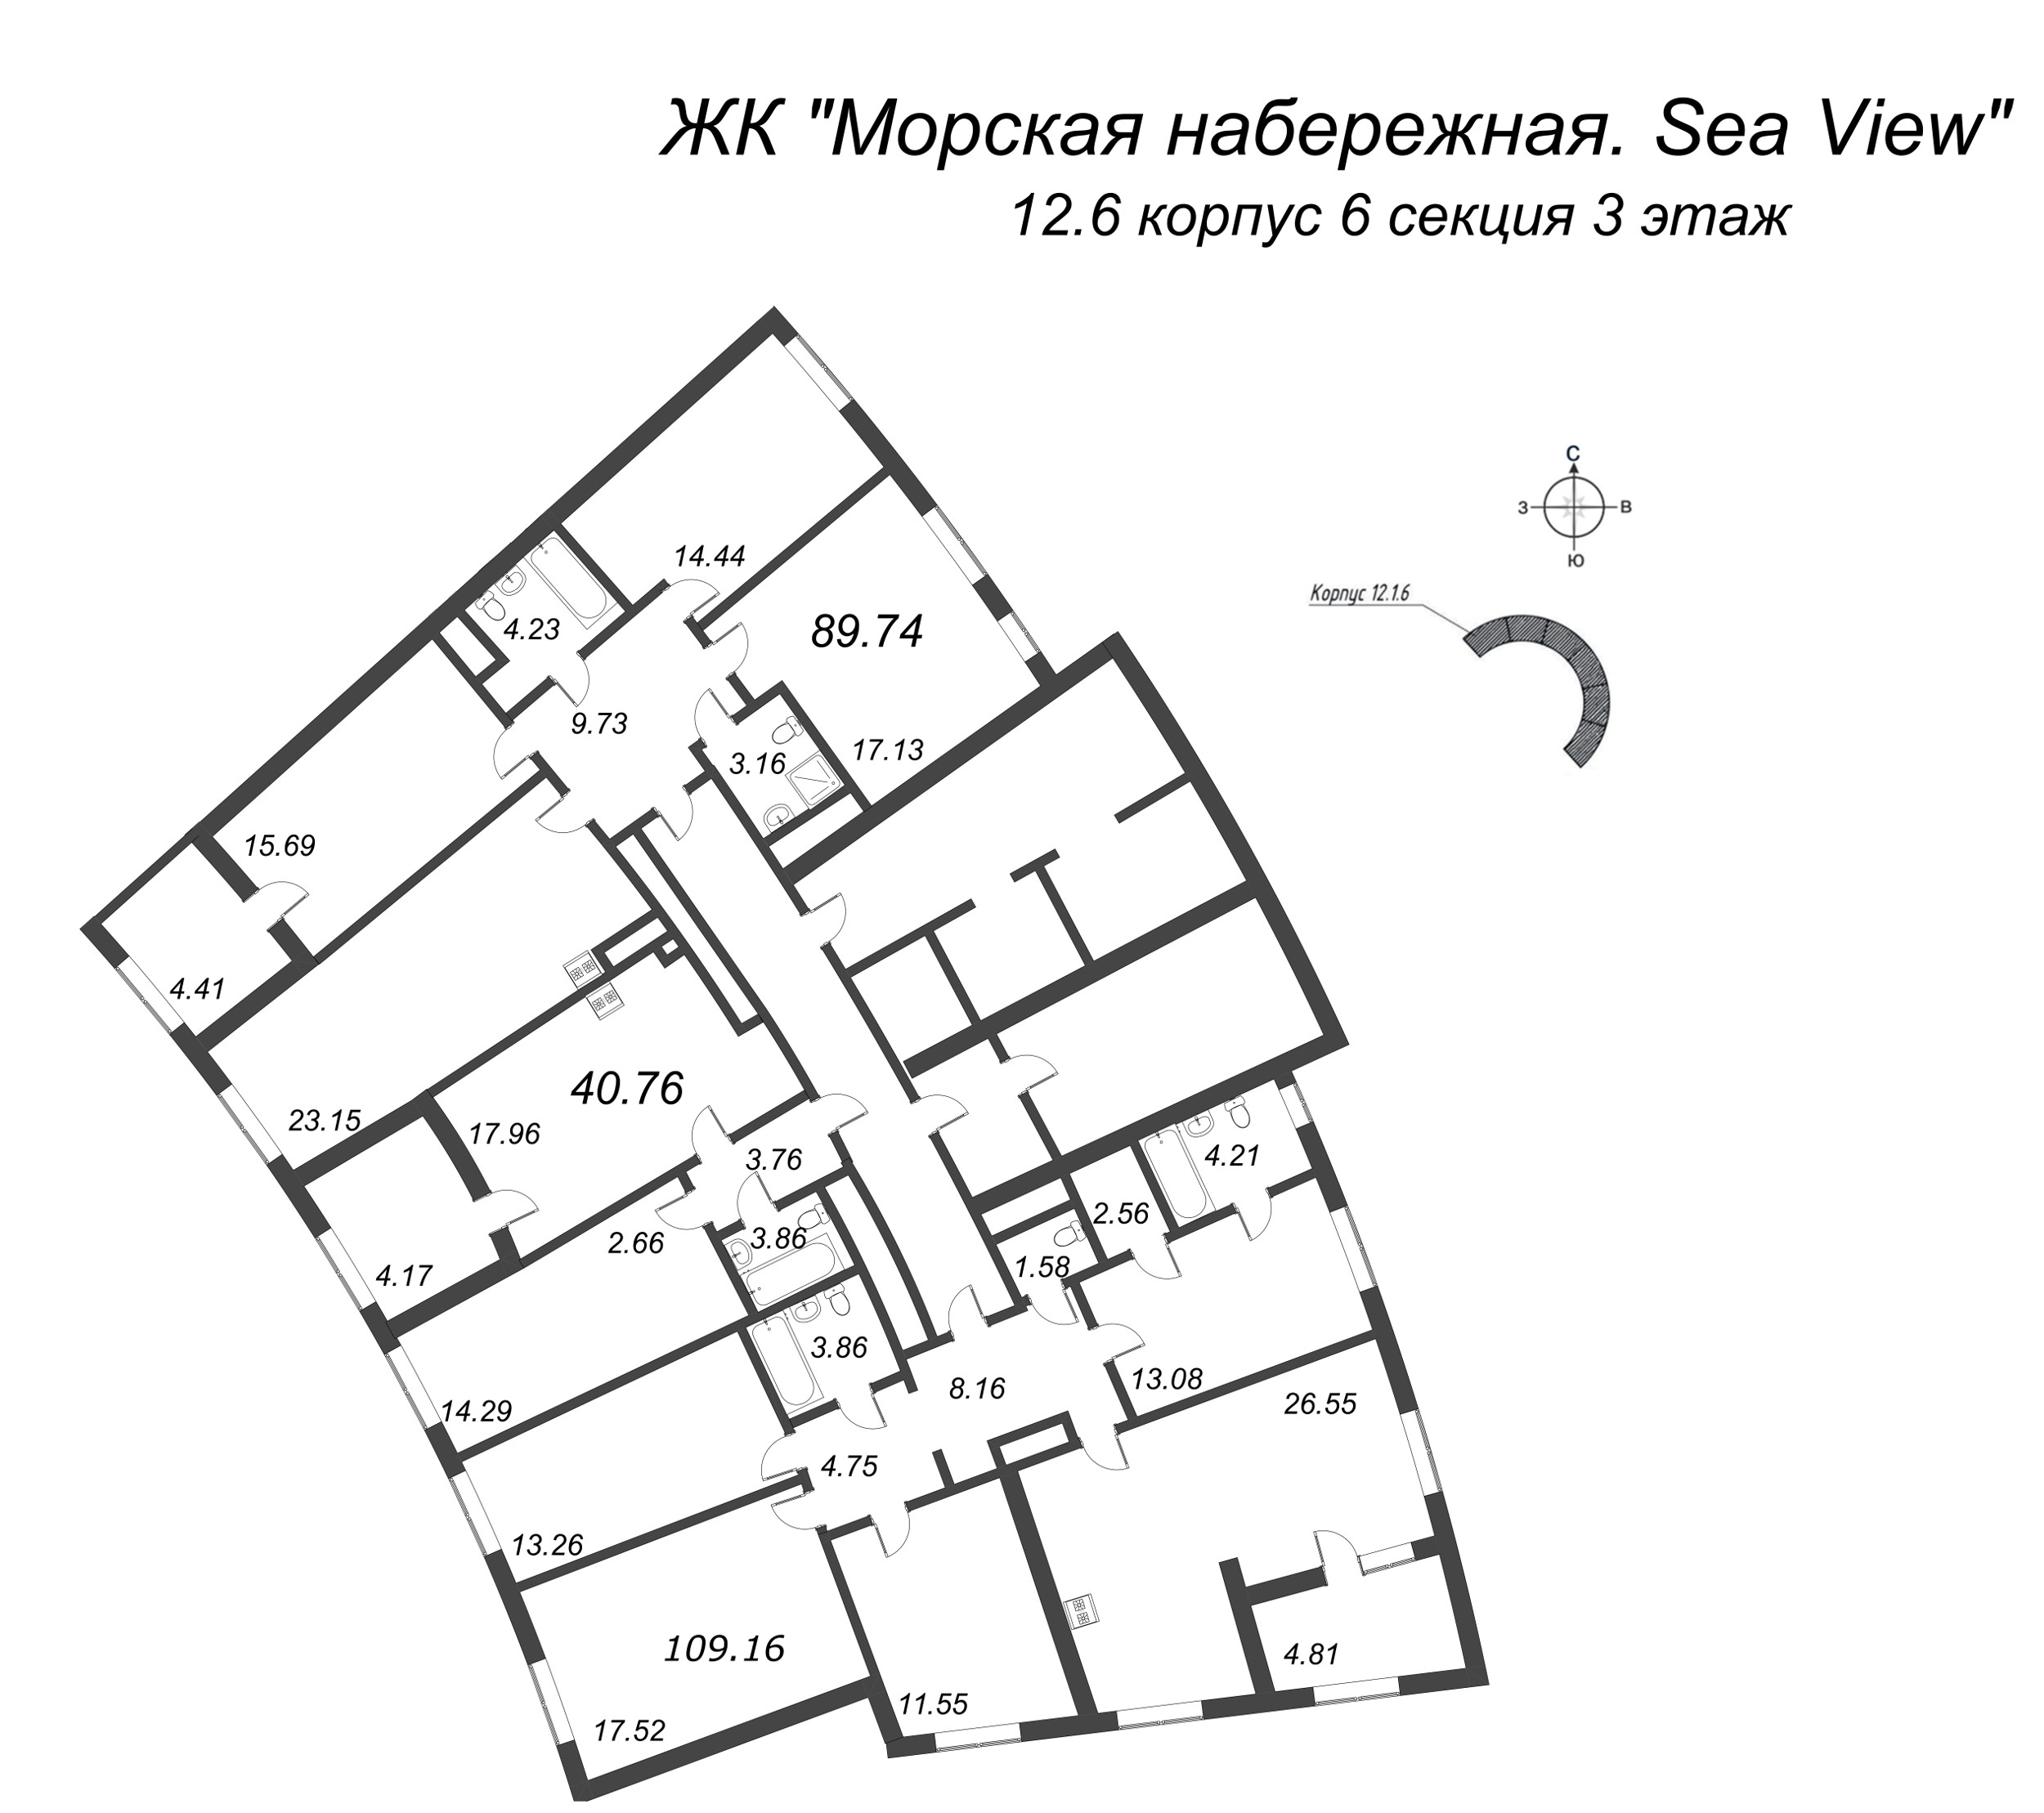 4-комнатная (Евро) квартира, 89.74 м² в ЖК "Морская набережная. SeaView" - планировка этажа